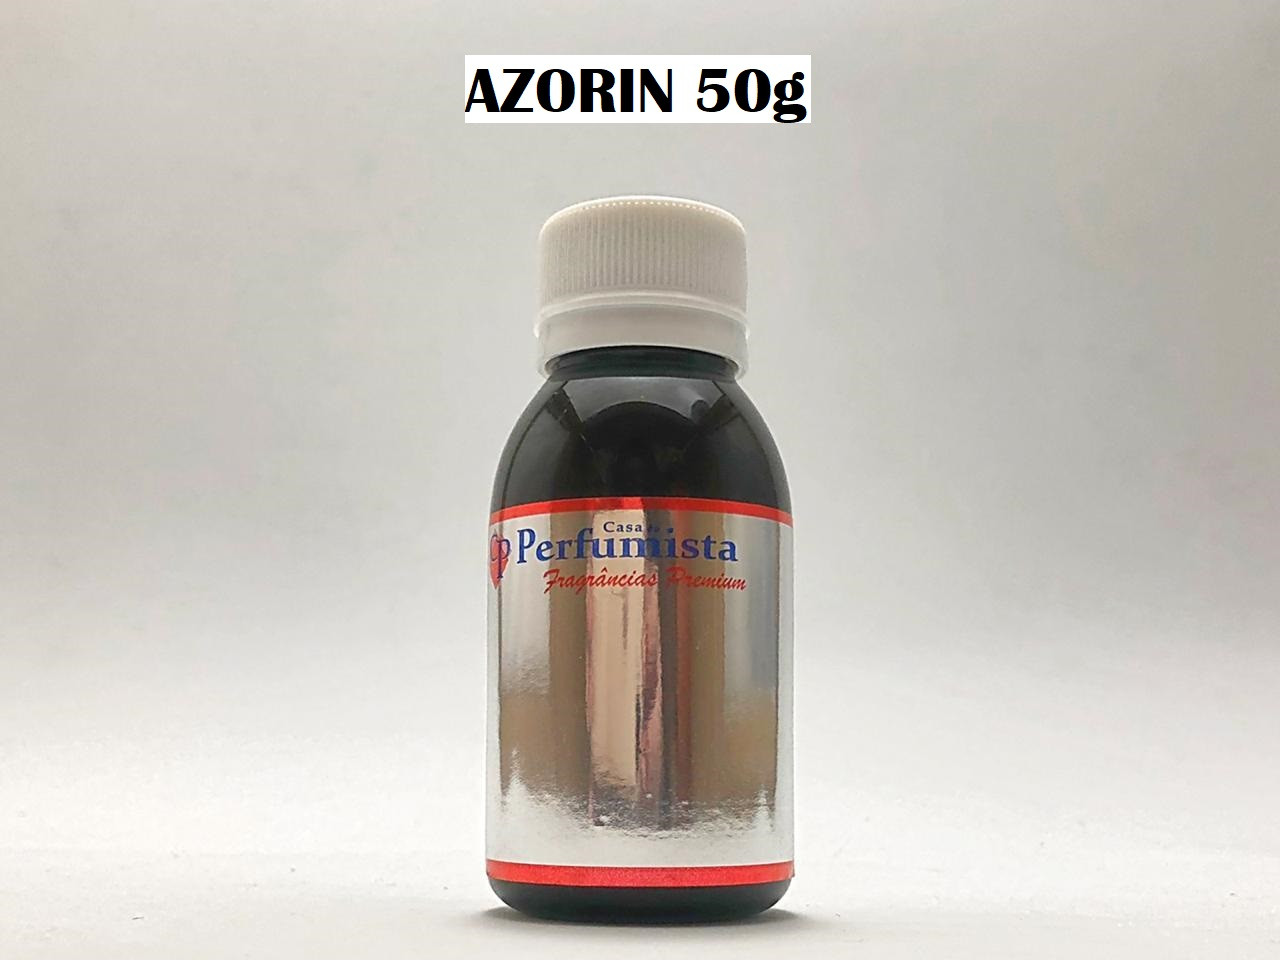 AZORIN 50g - Inspiração: Azzaro Pour Homme Masculino